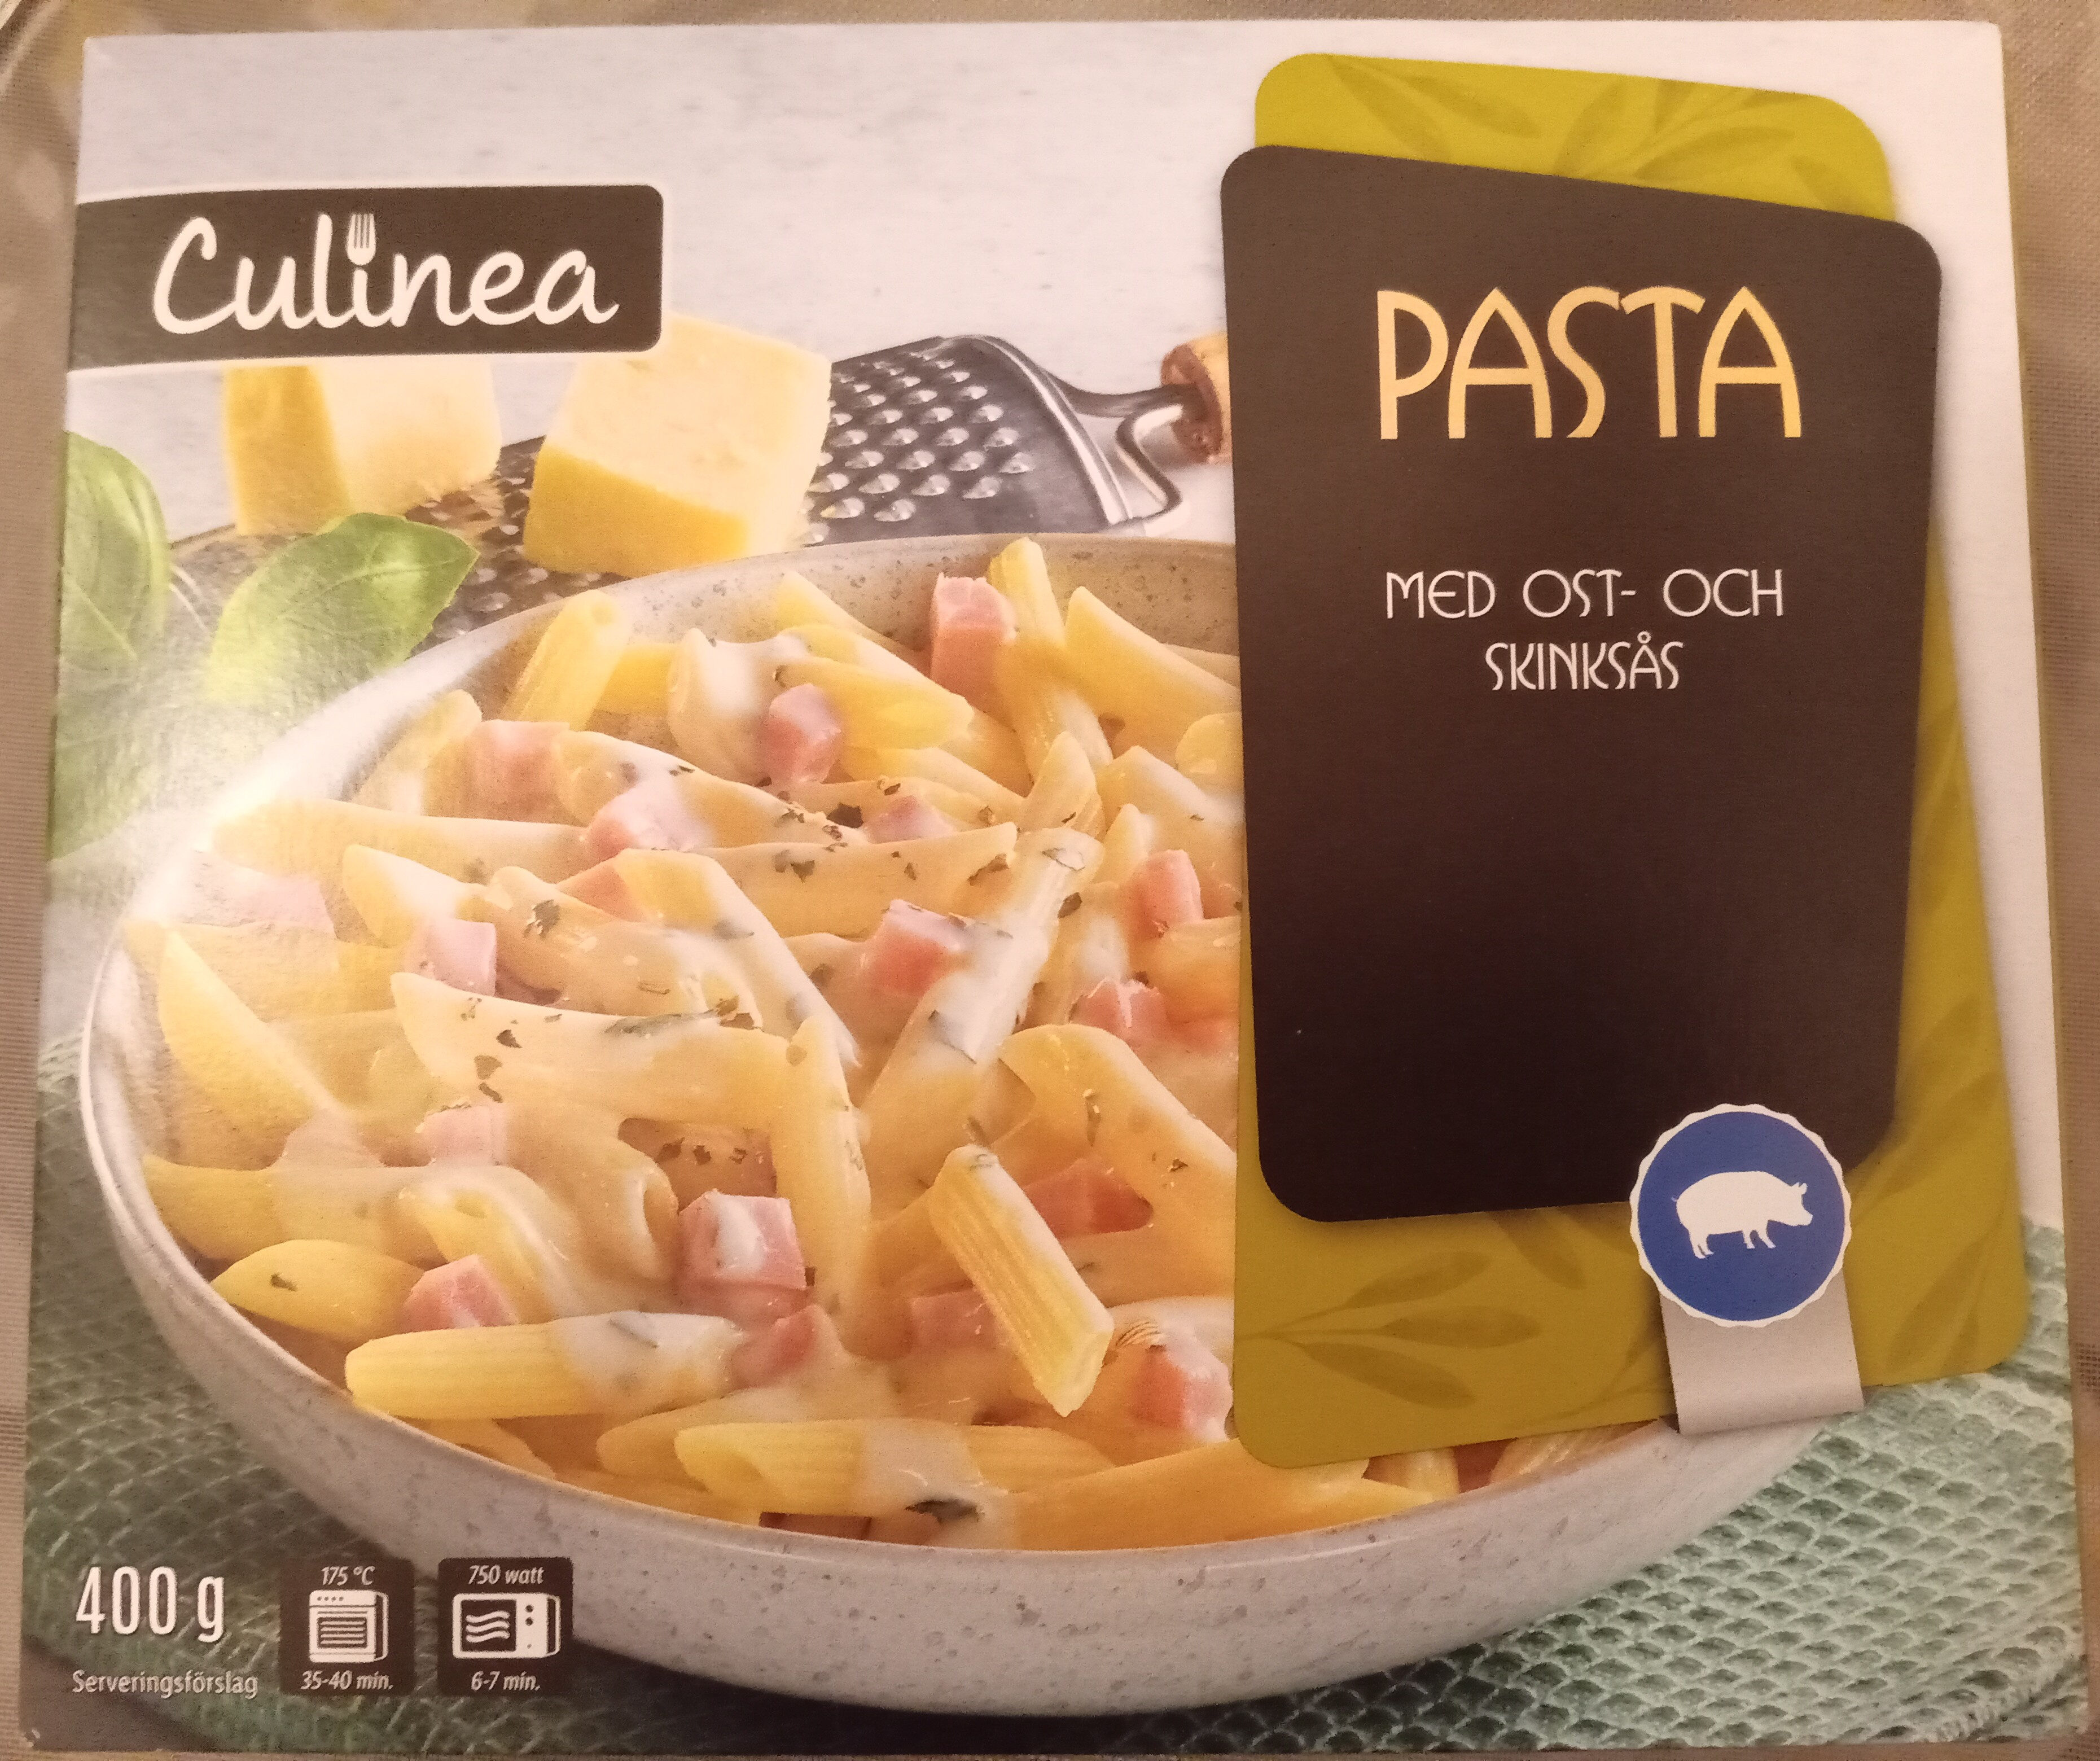 Culinea Pasta med ost- och skinksås - Product - sv